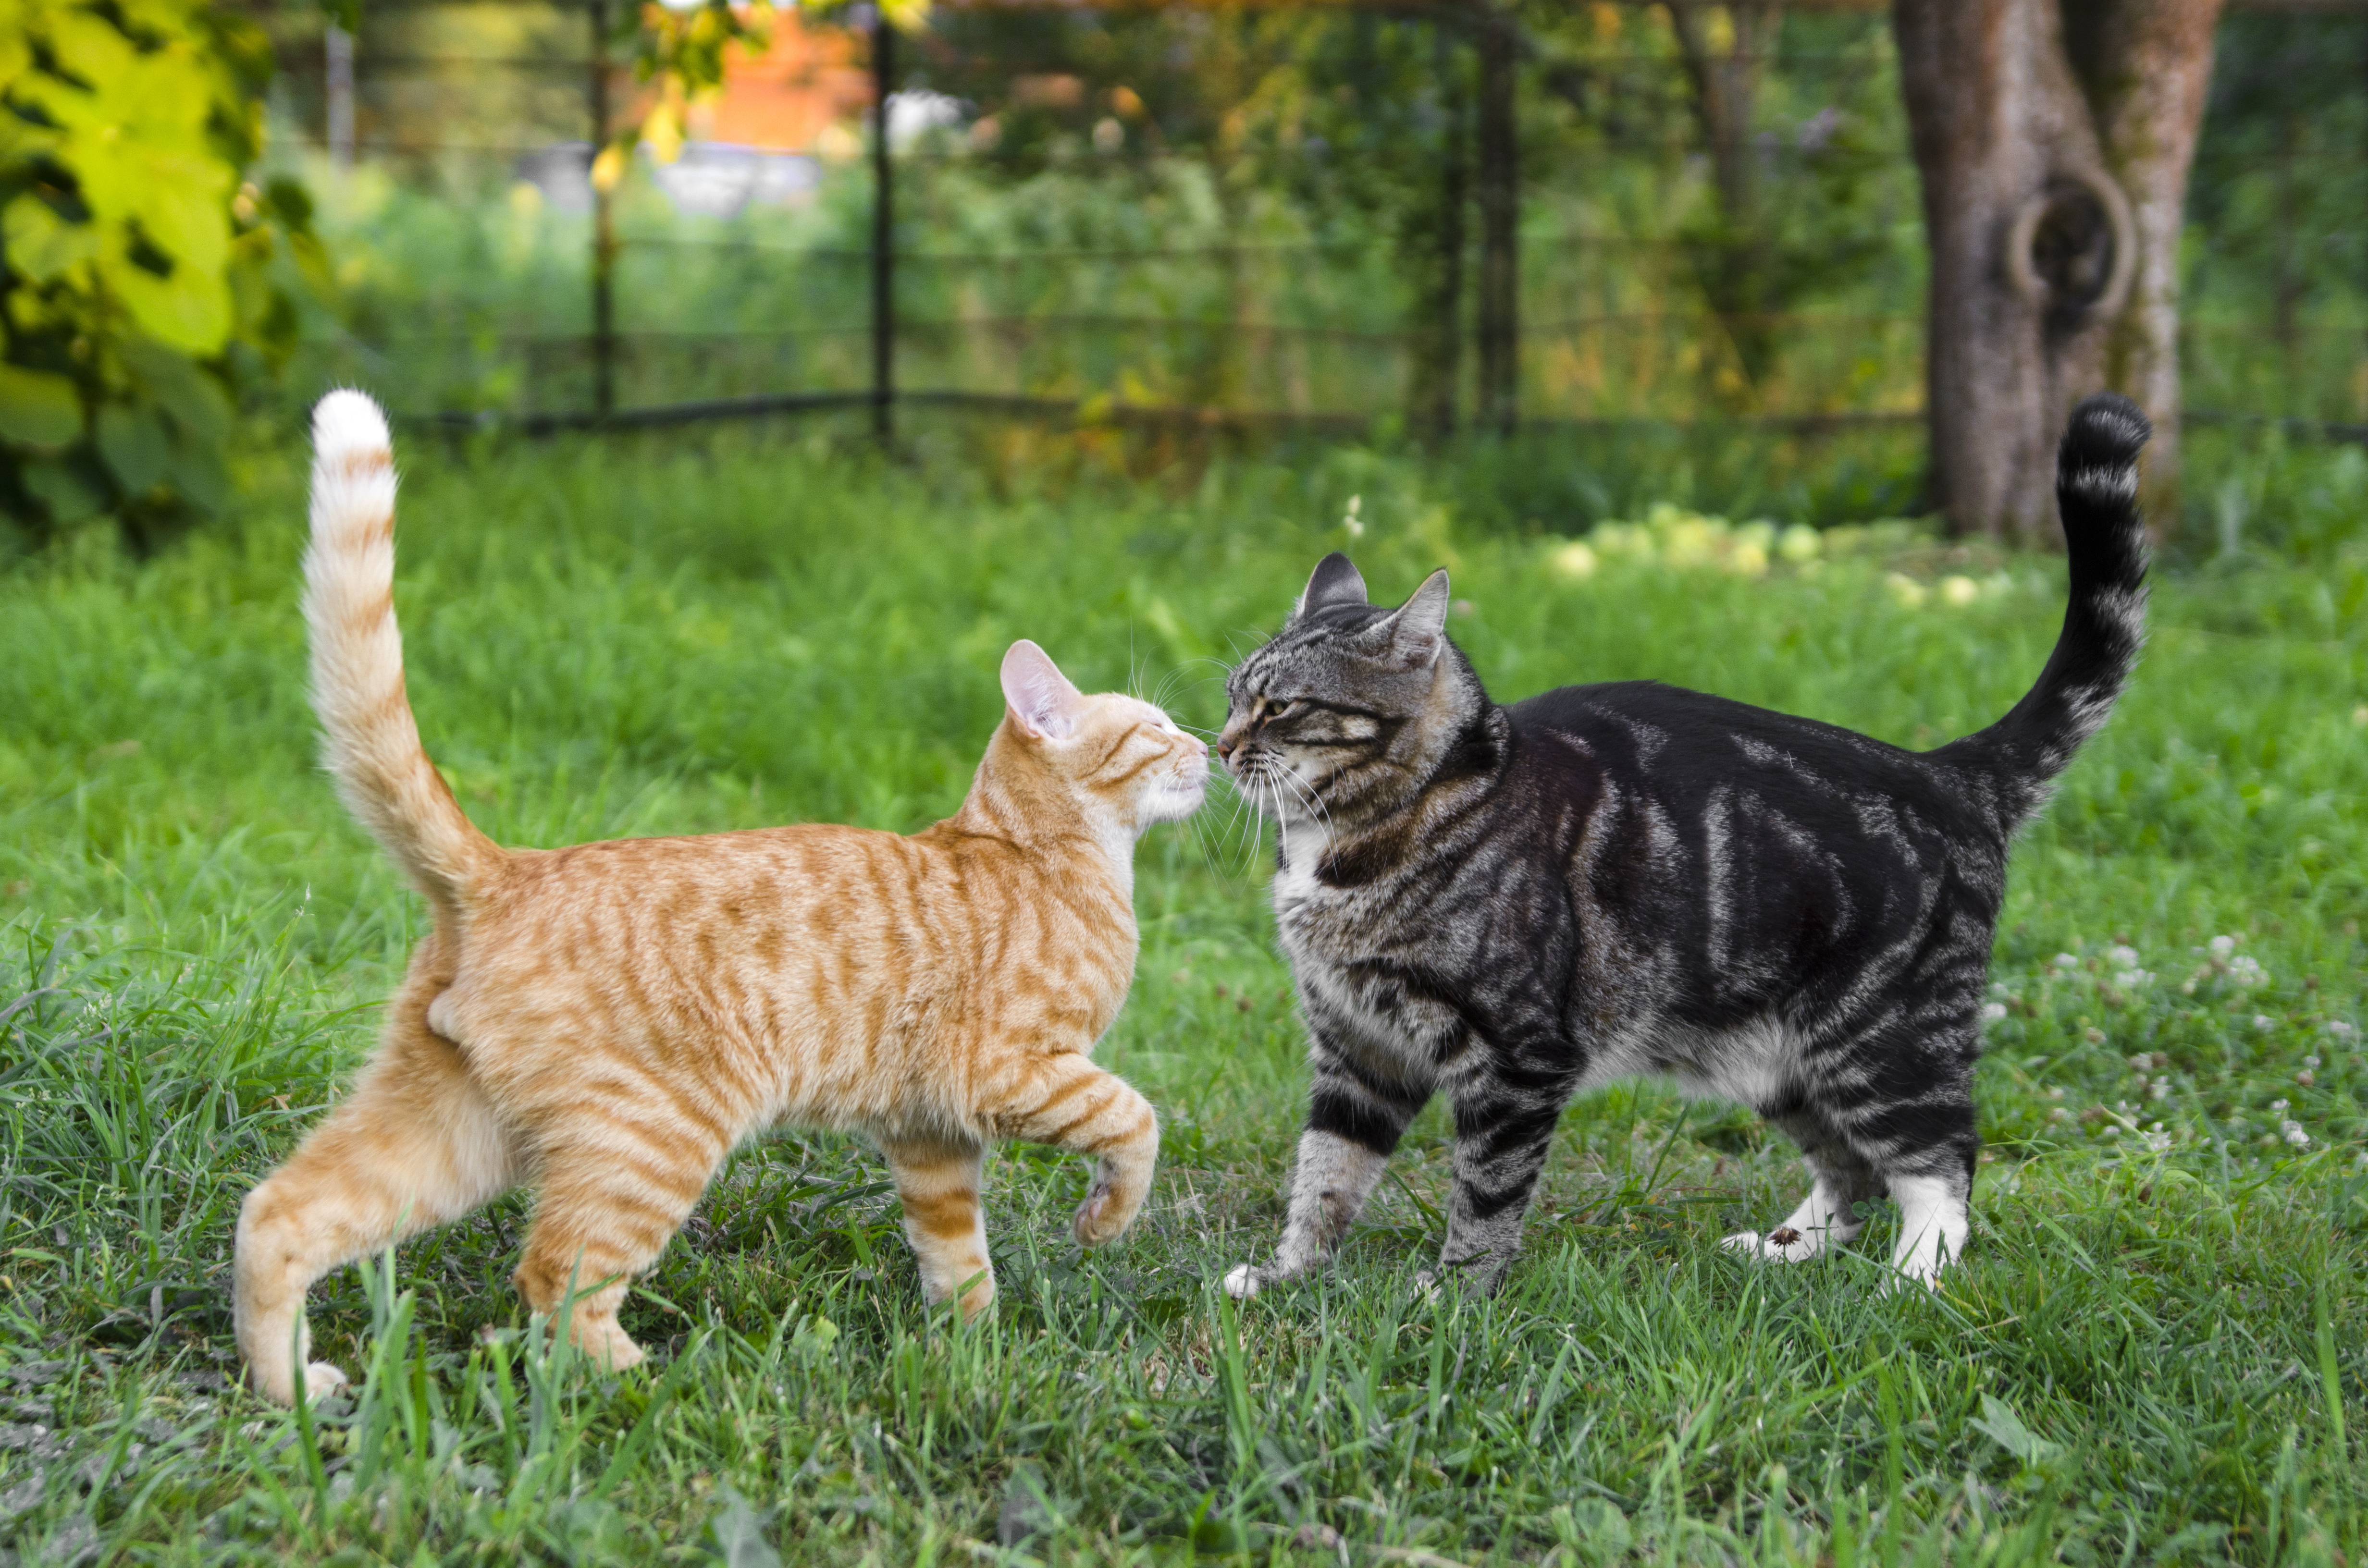 nevel grot Handel Katten of kittens bij elkaar zetten - Tips voor een nieuwe bewoner | zooplus